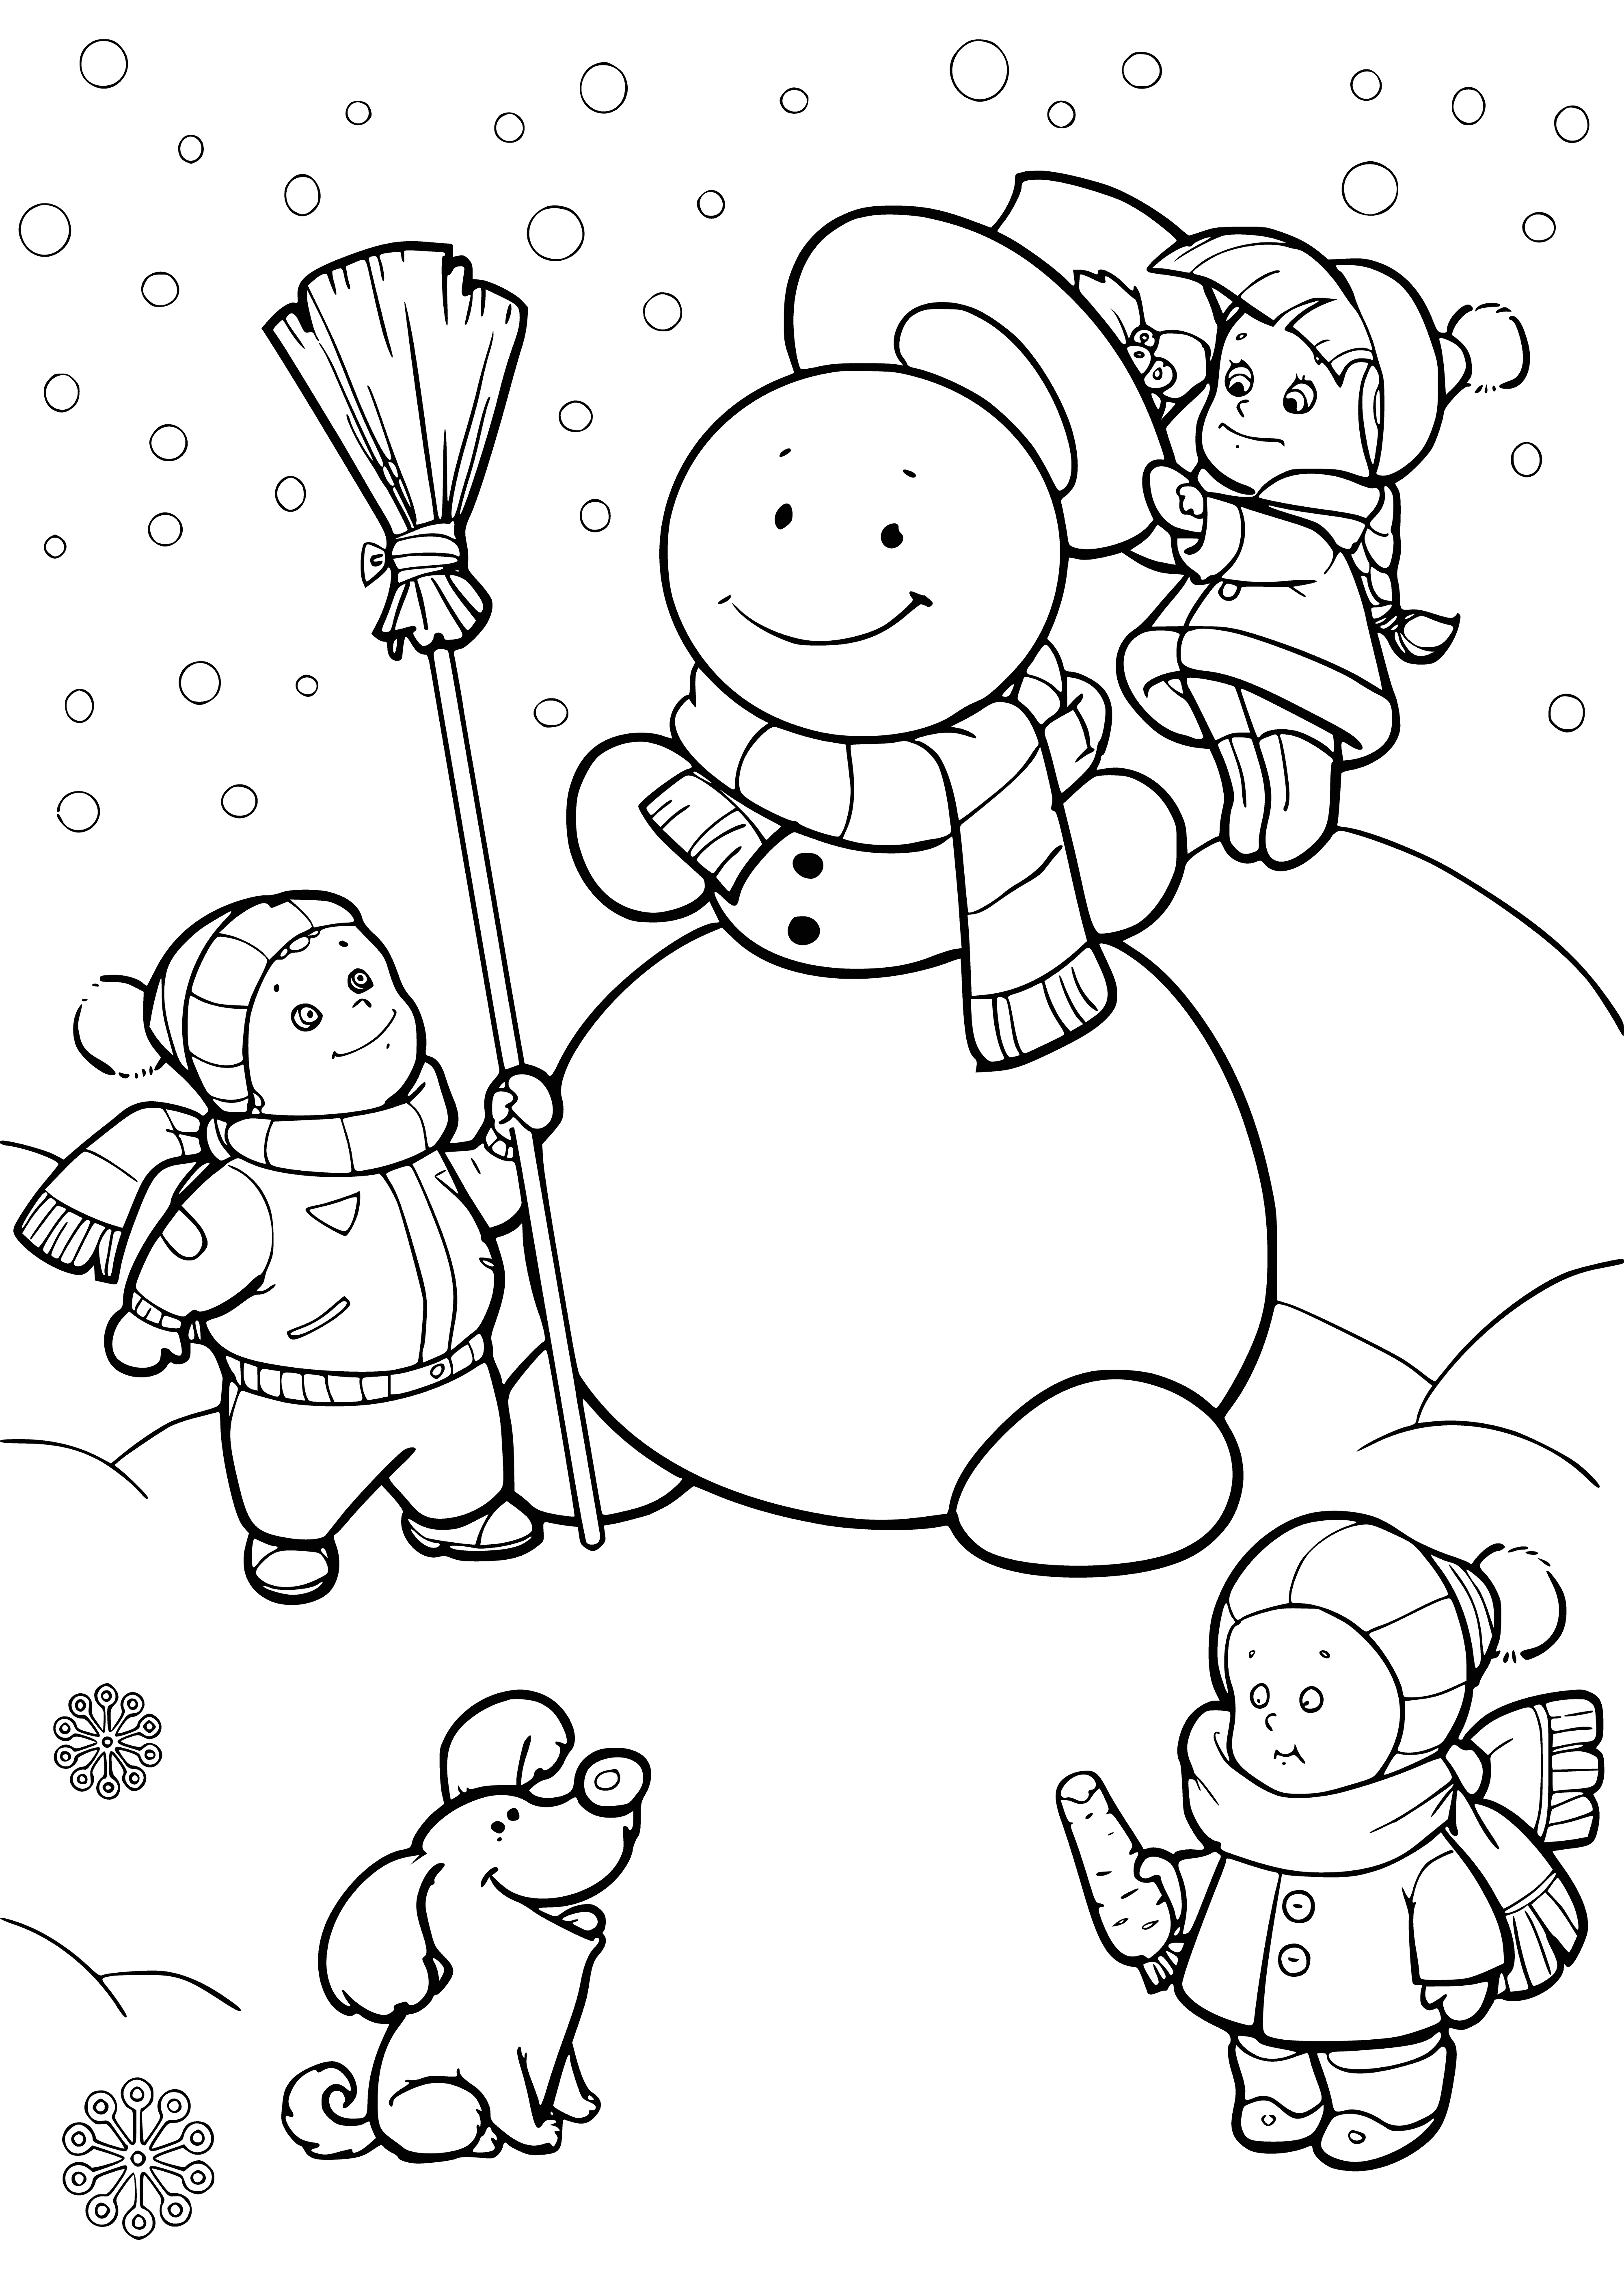 Kinder formen einen Schneemann Malseite